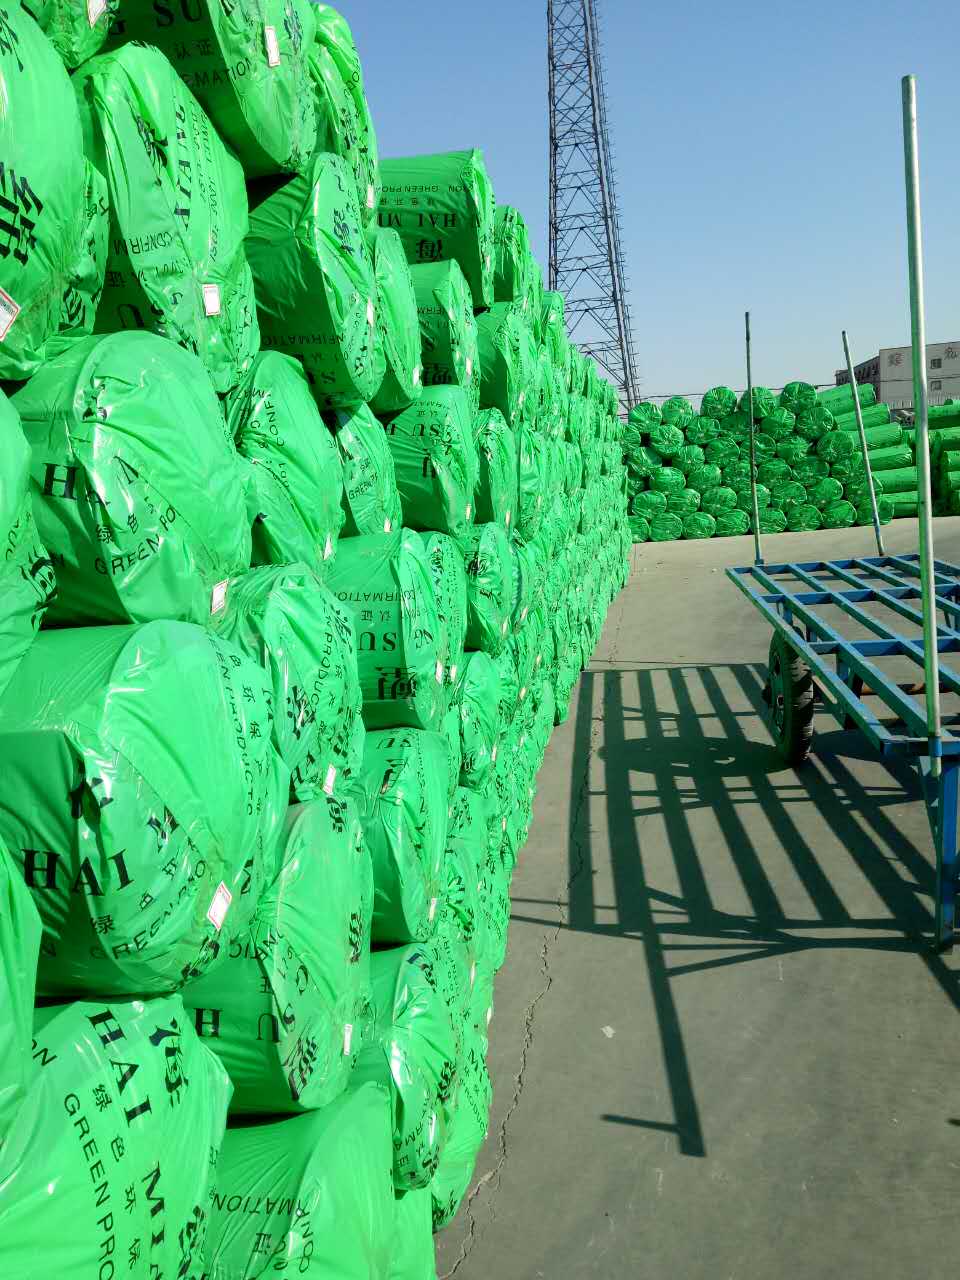 橡塑板供应商橡塑板厂家 橡塑板价格 橡塑板报价 橡塑板供应商